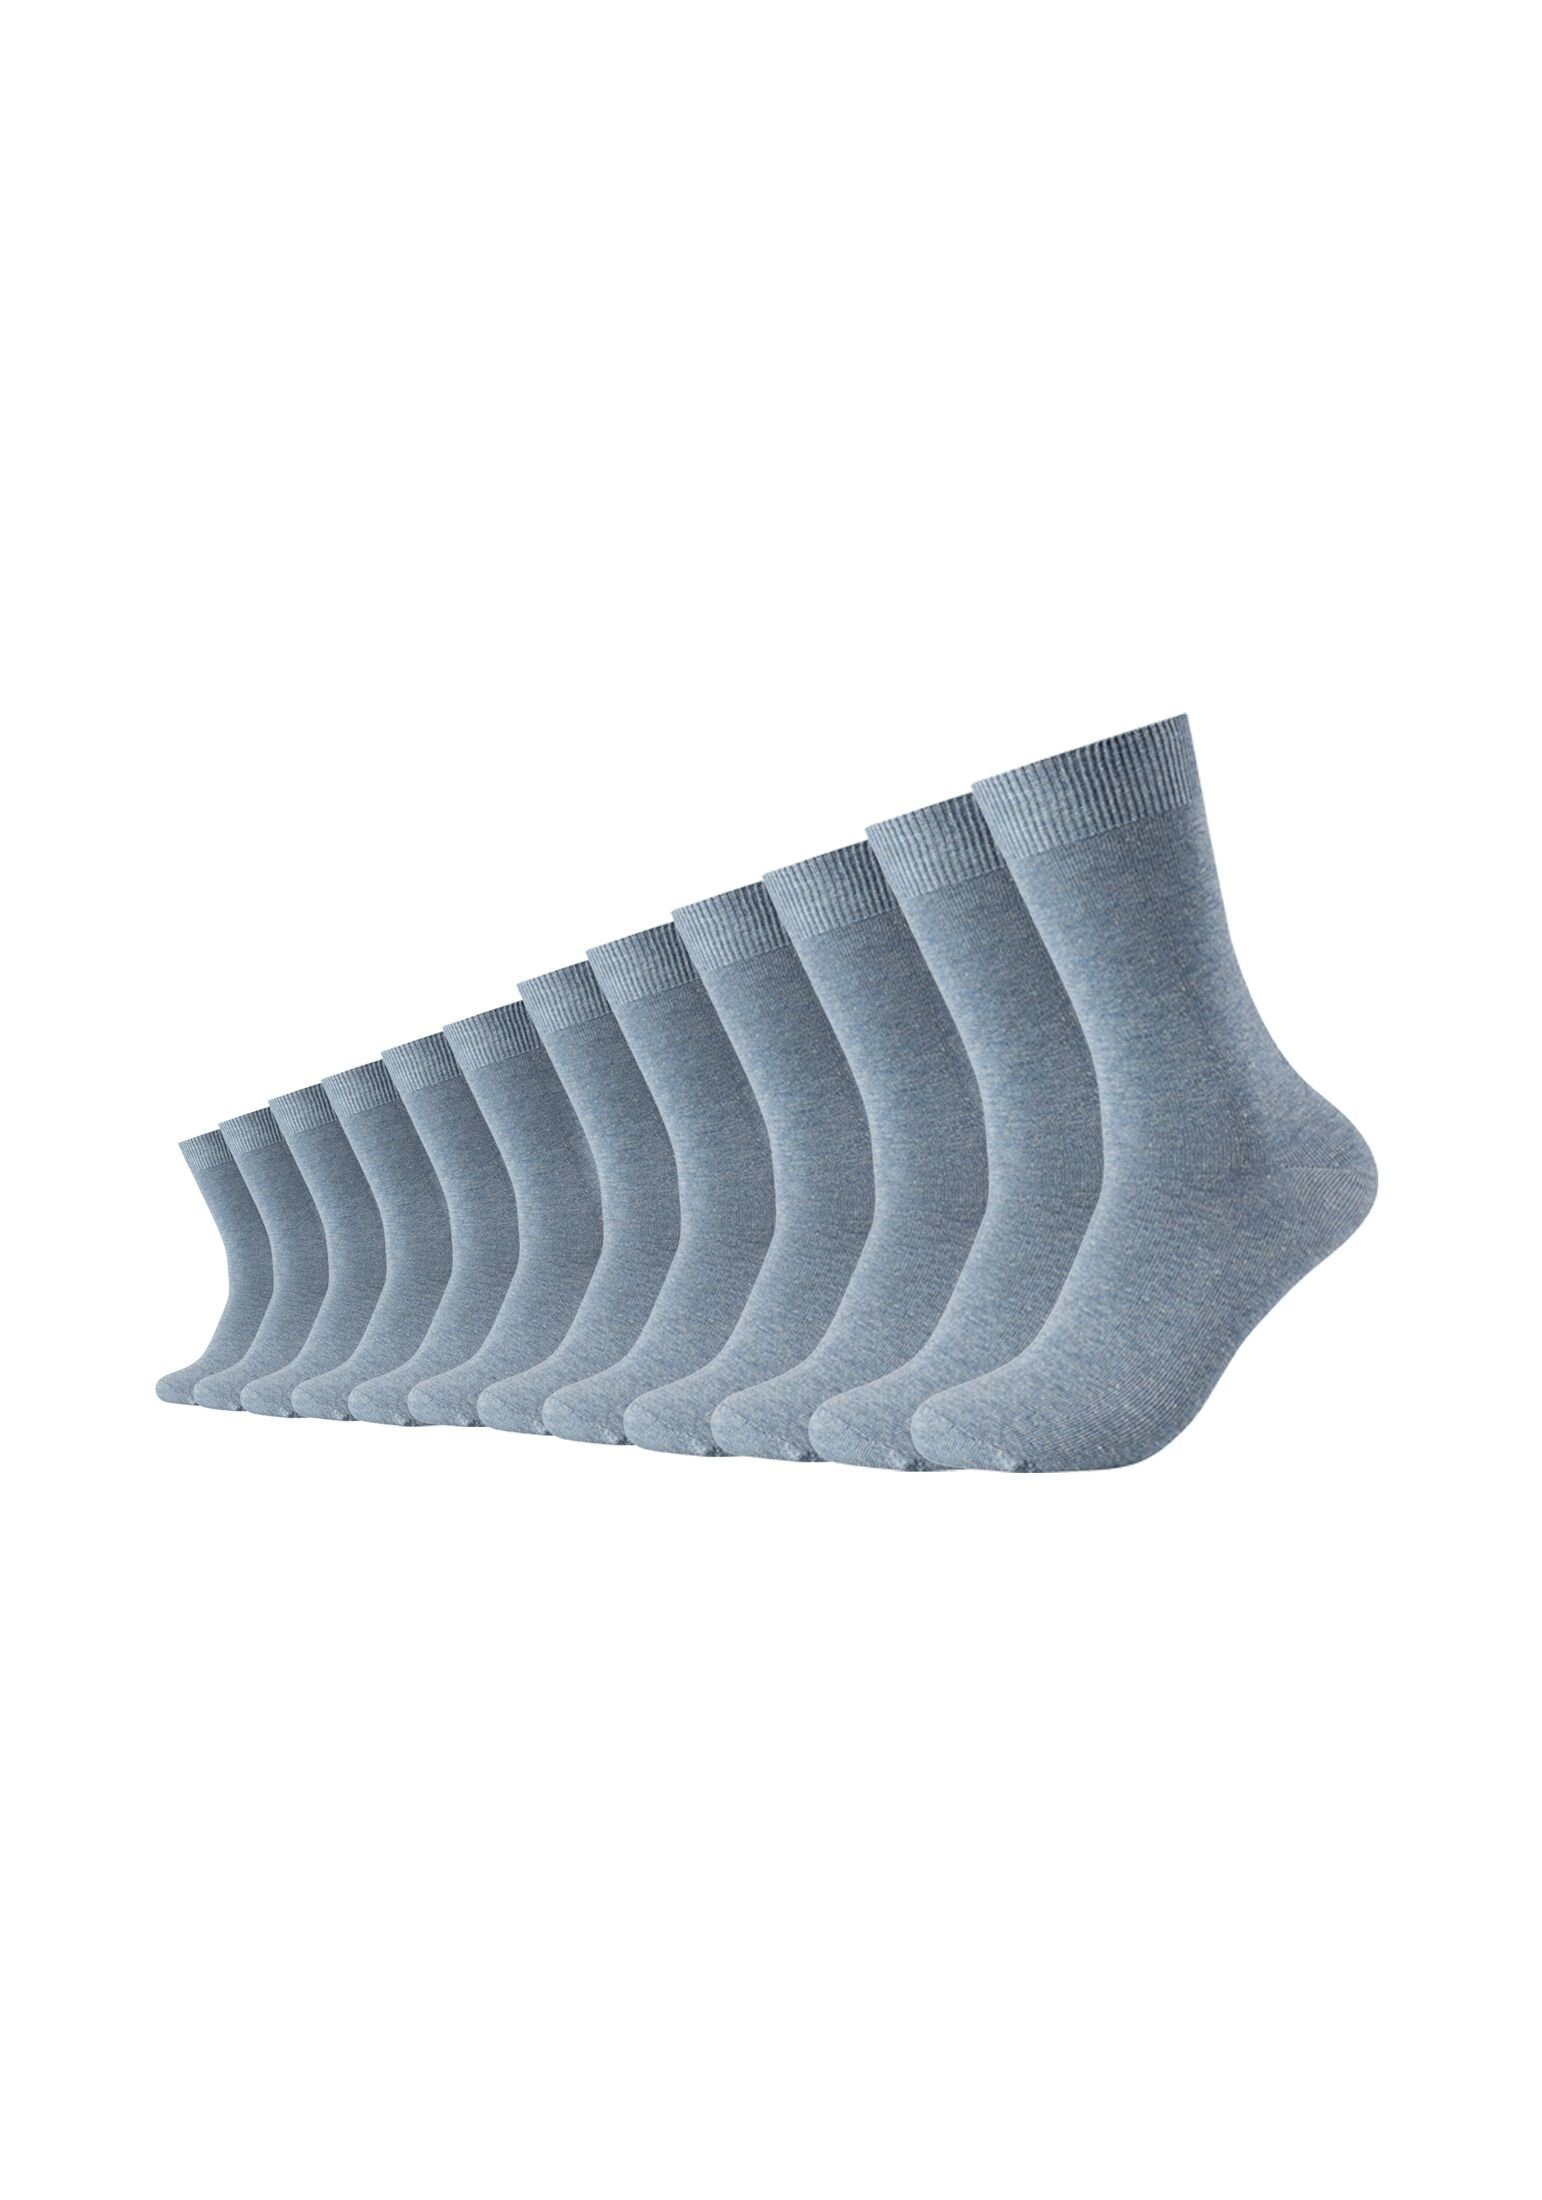 Pack, Design In mittelhohem und Freizeit geeignet Alltag für Socken ideal 12er Camano Socken